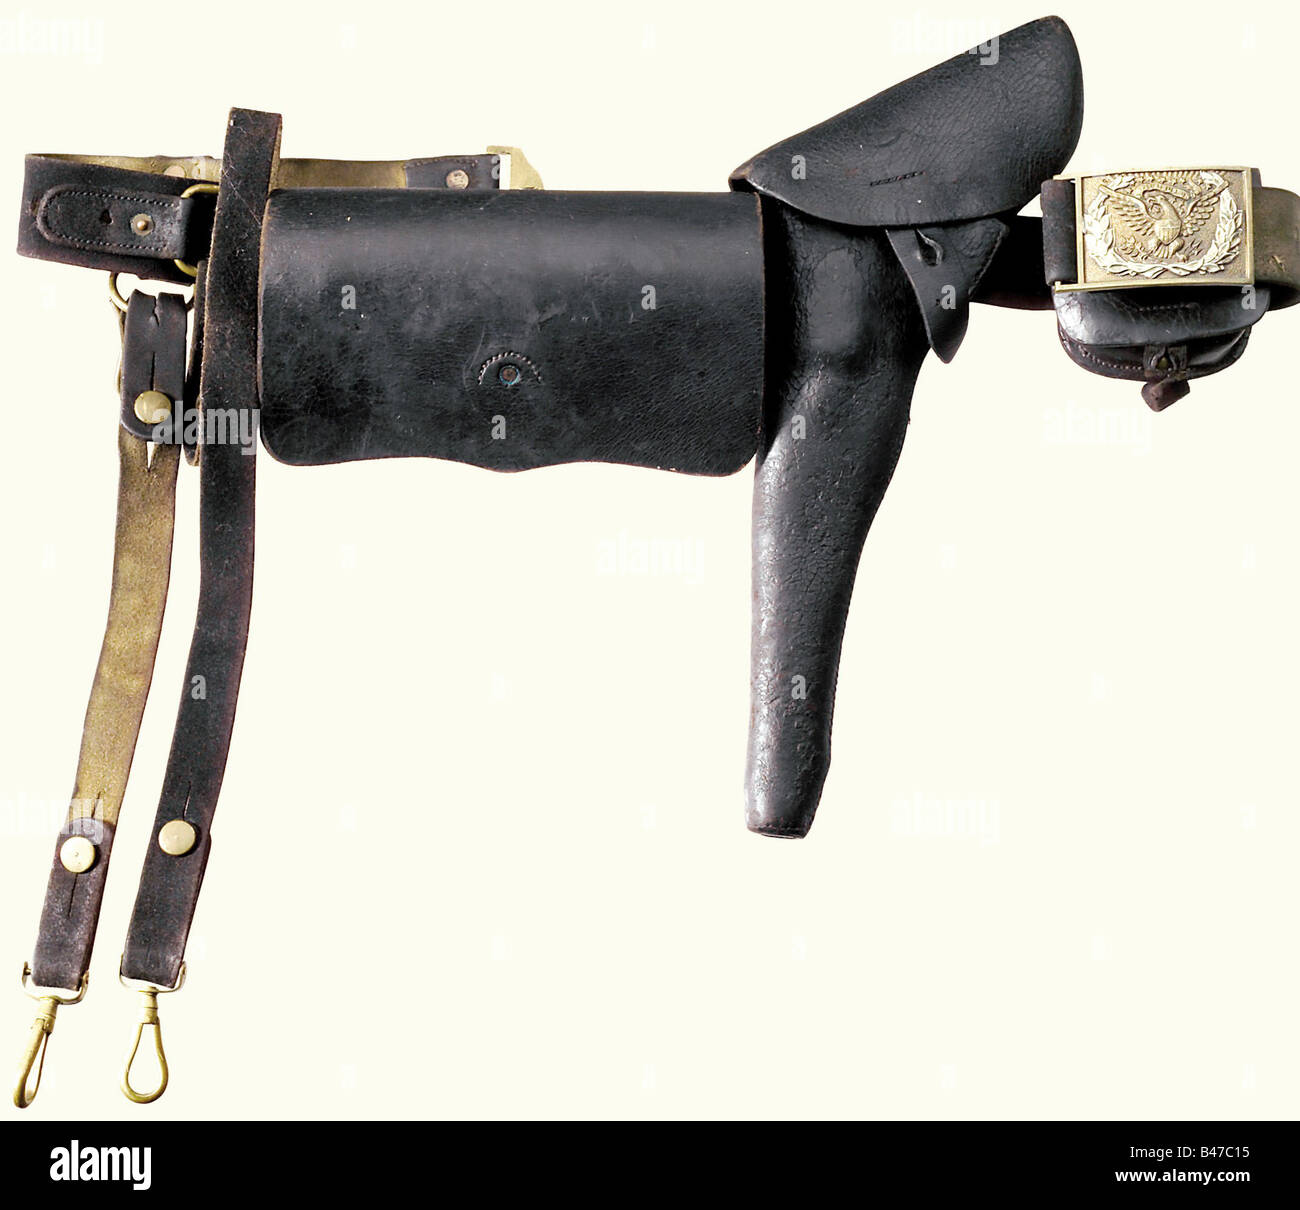 Ceinture sabre pour les officiers de l'Union (guerre civile américaine),  milieu du XIXe siècle. Une ceinture en cuir, noire à l'extérieur, avec un  étui revolver fixé, un étui à capuchon et une